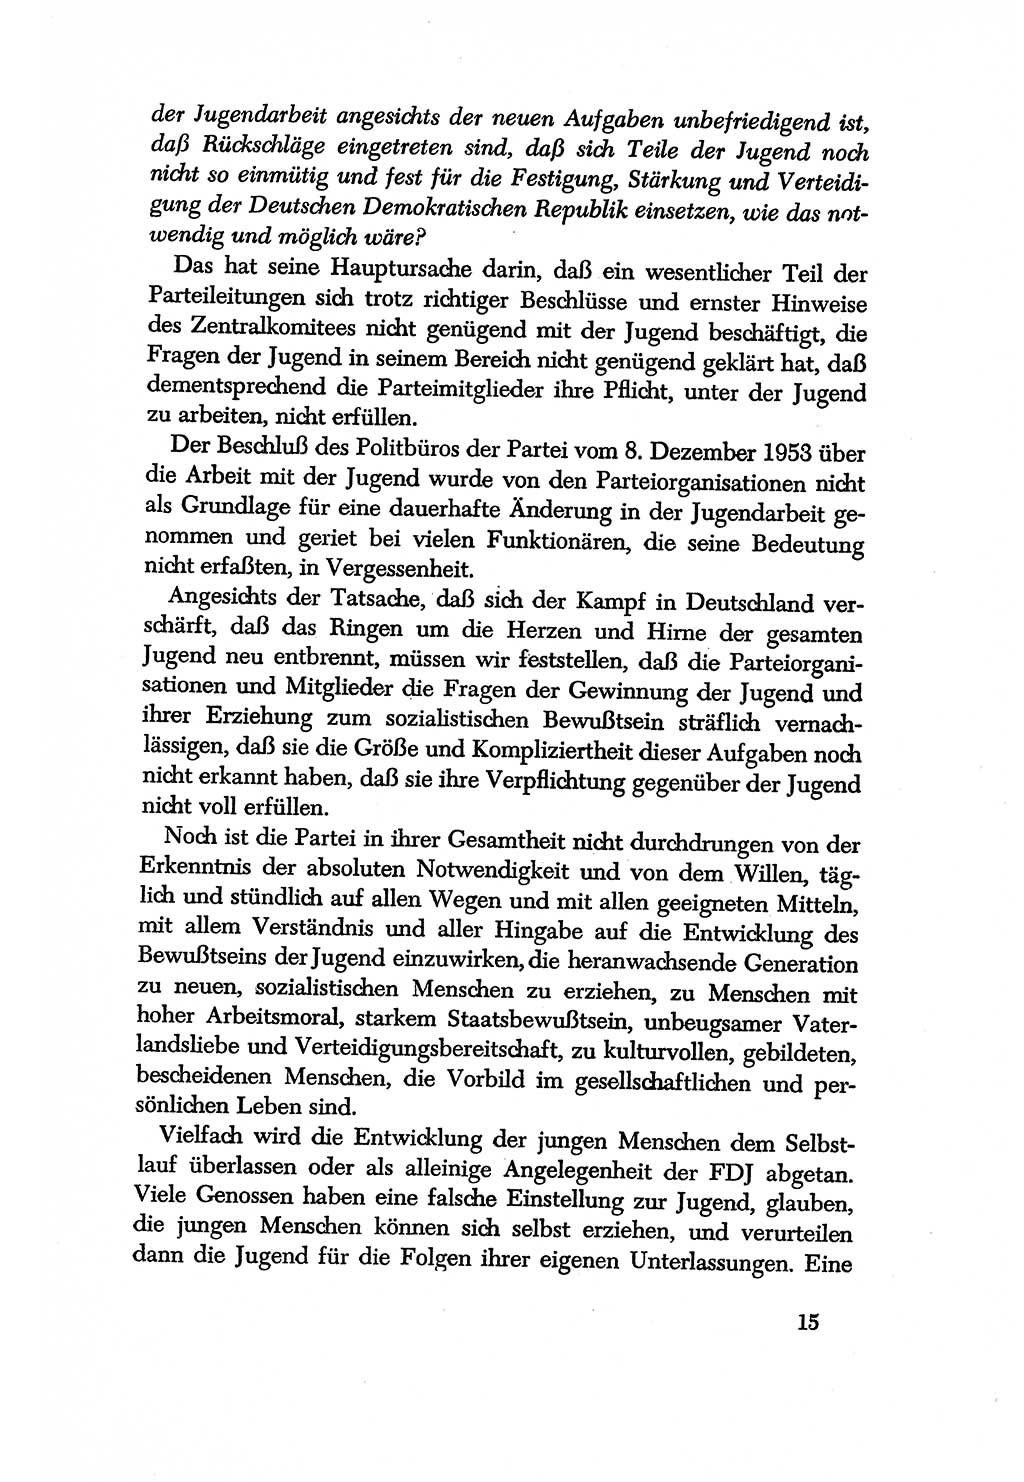 Dokumente der Sozialistischen Einheitspartei Deutschlands (SED) [Deutsche Demokratische Republik (DDR)] 1956-1957, Seite 15 (Dok. SED DDR 1956-1957, S. 15)